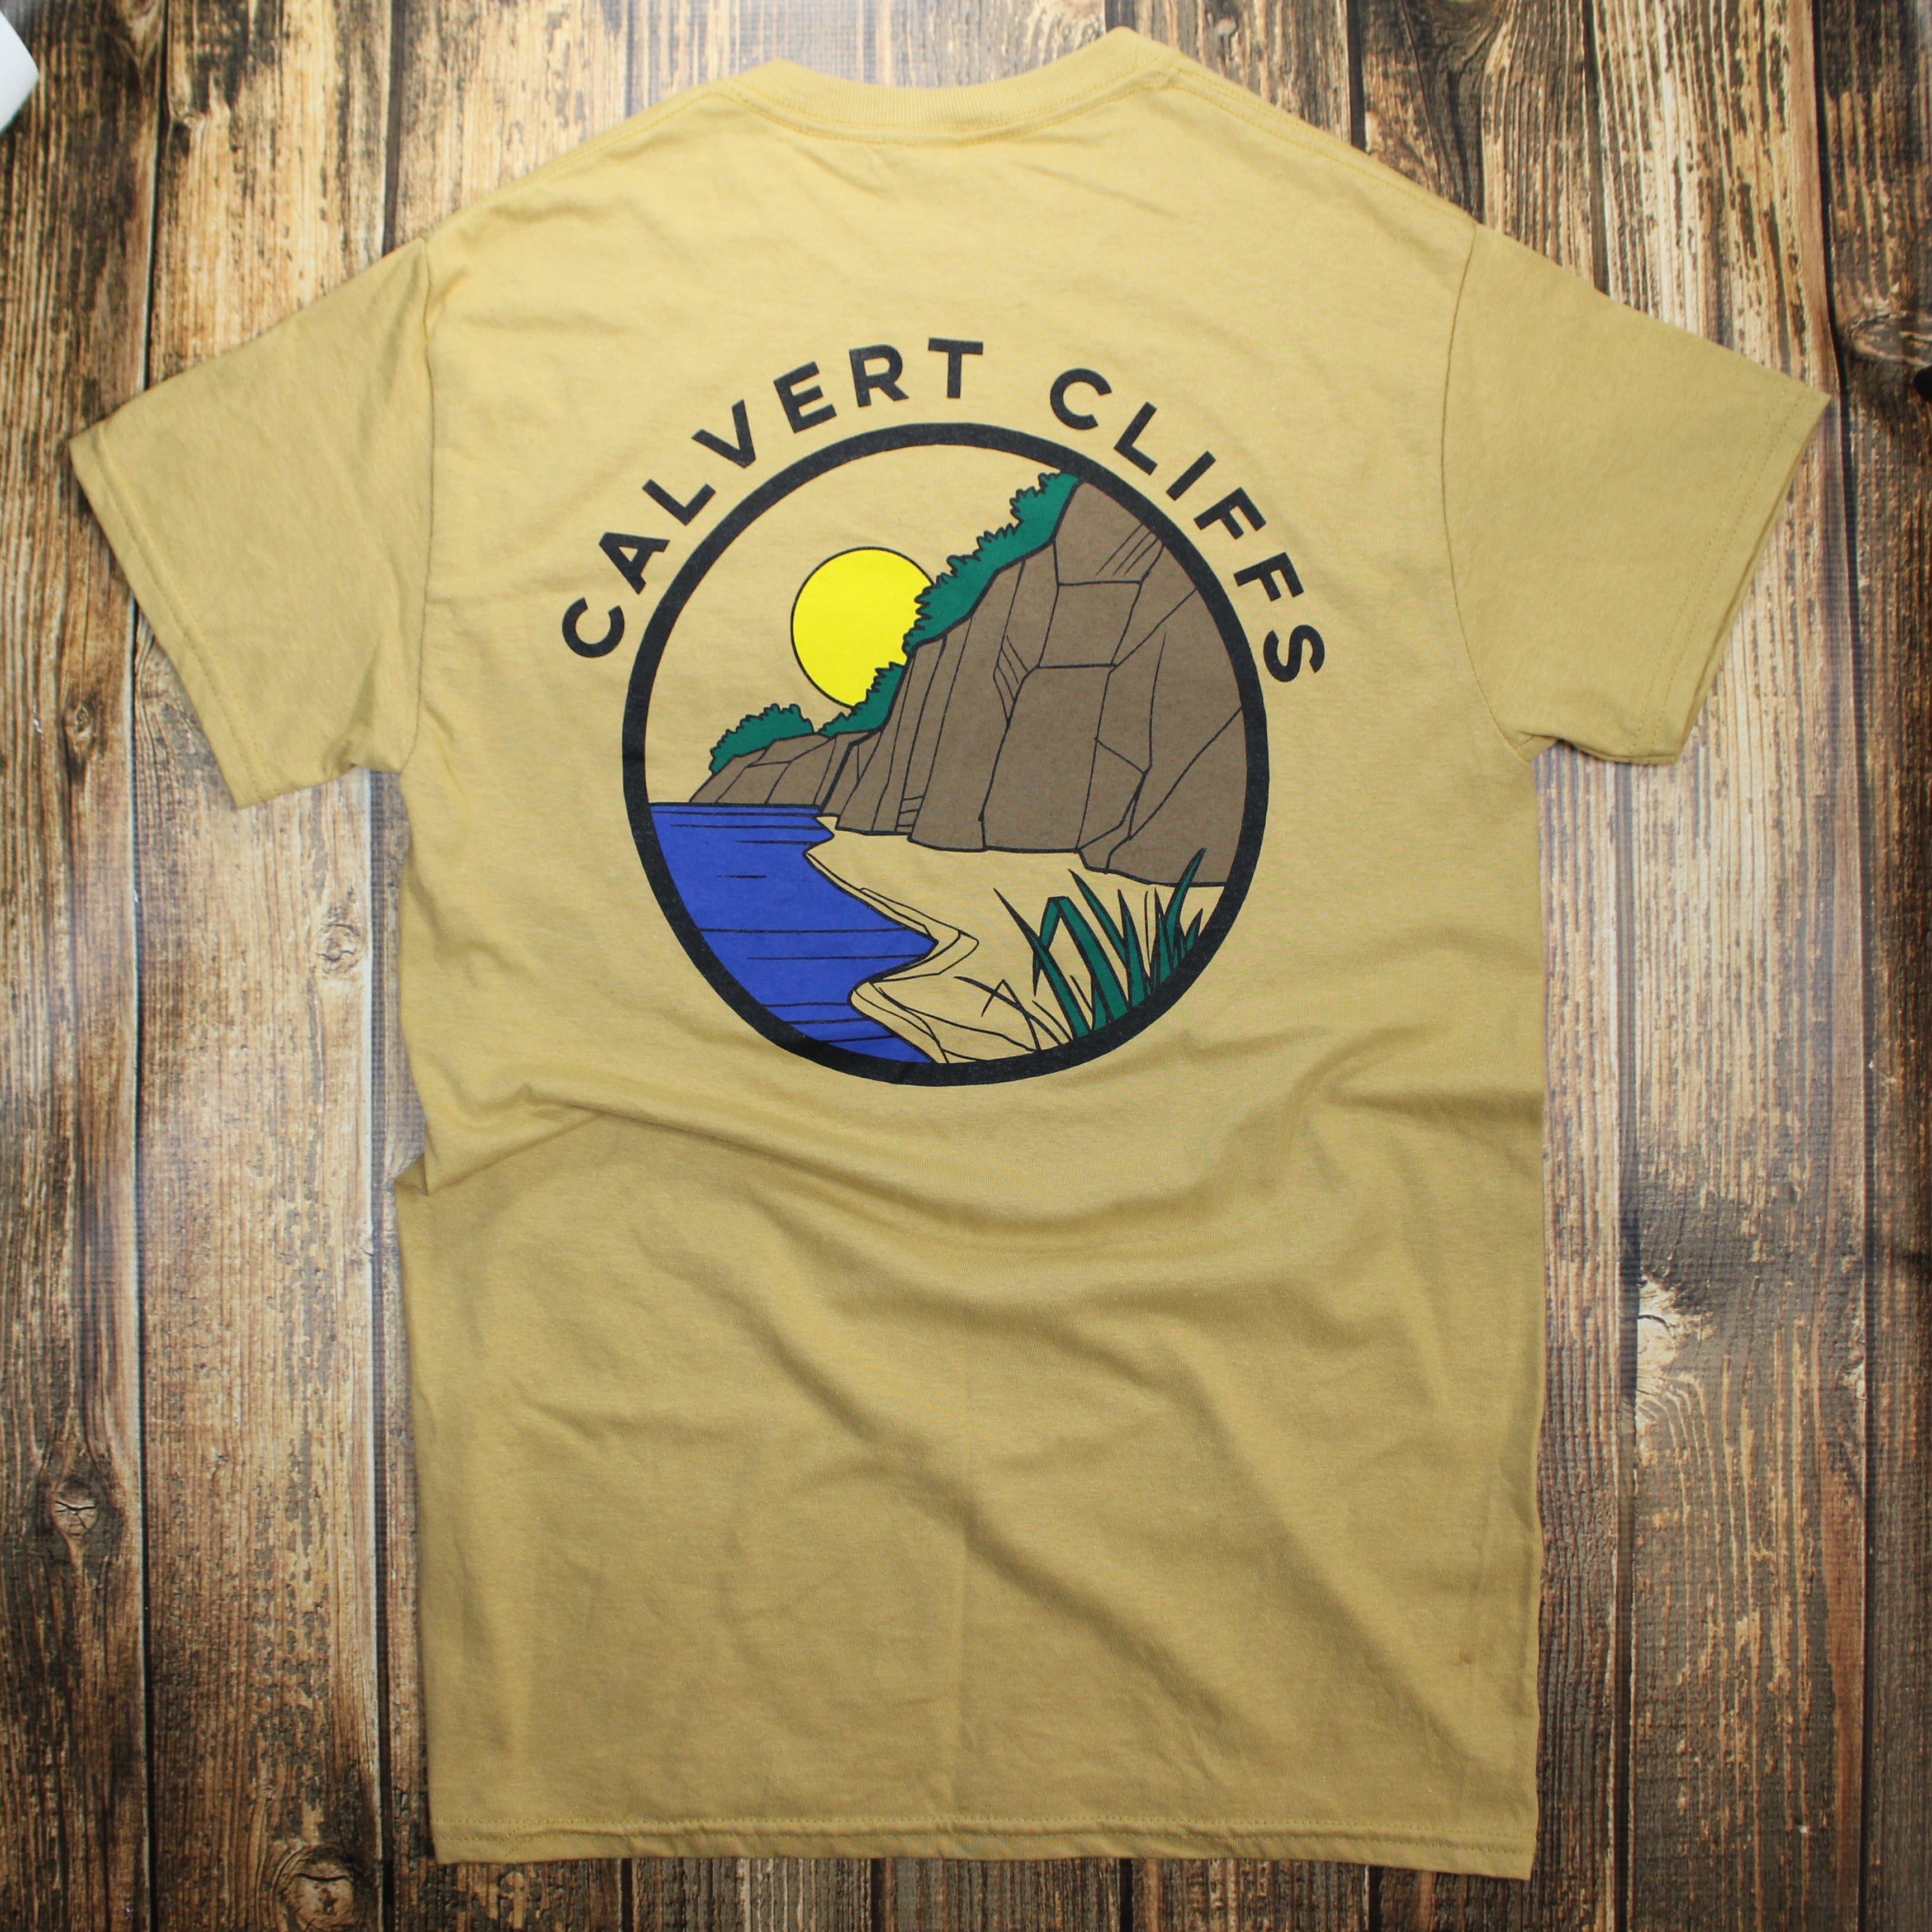 Calvert Cliffs State Park (Gold) / Shirt - Route One Apparel